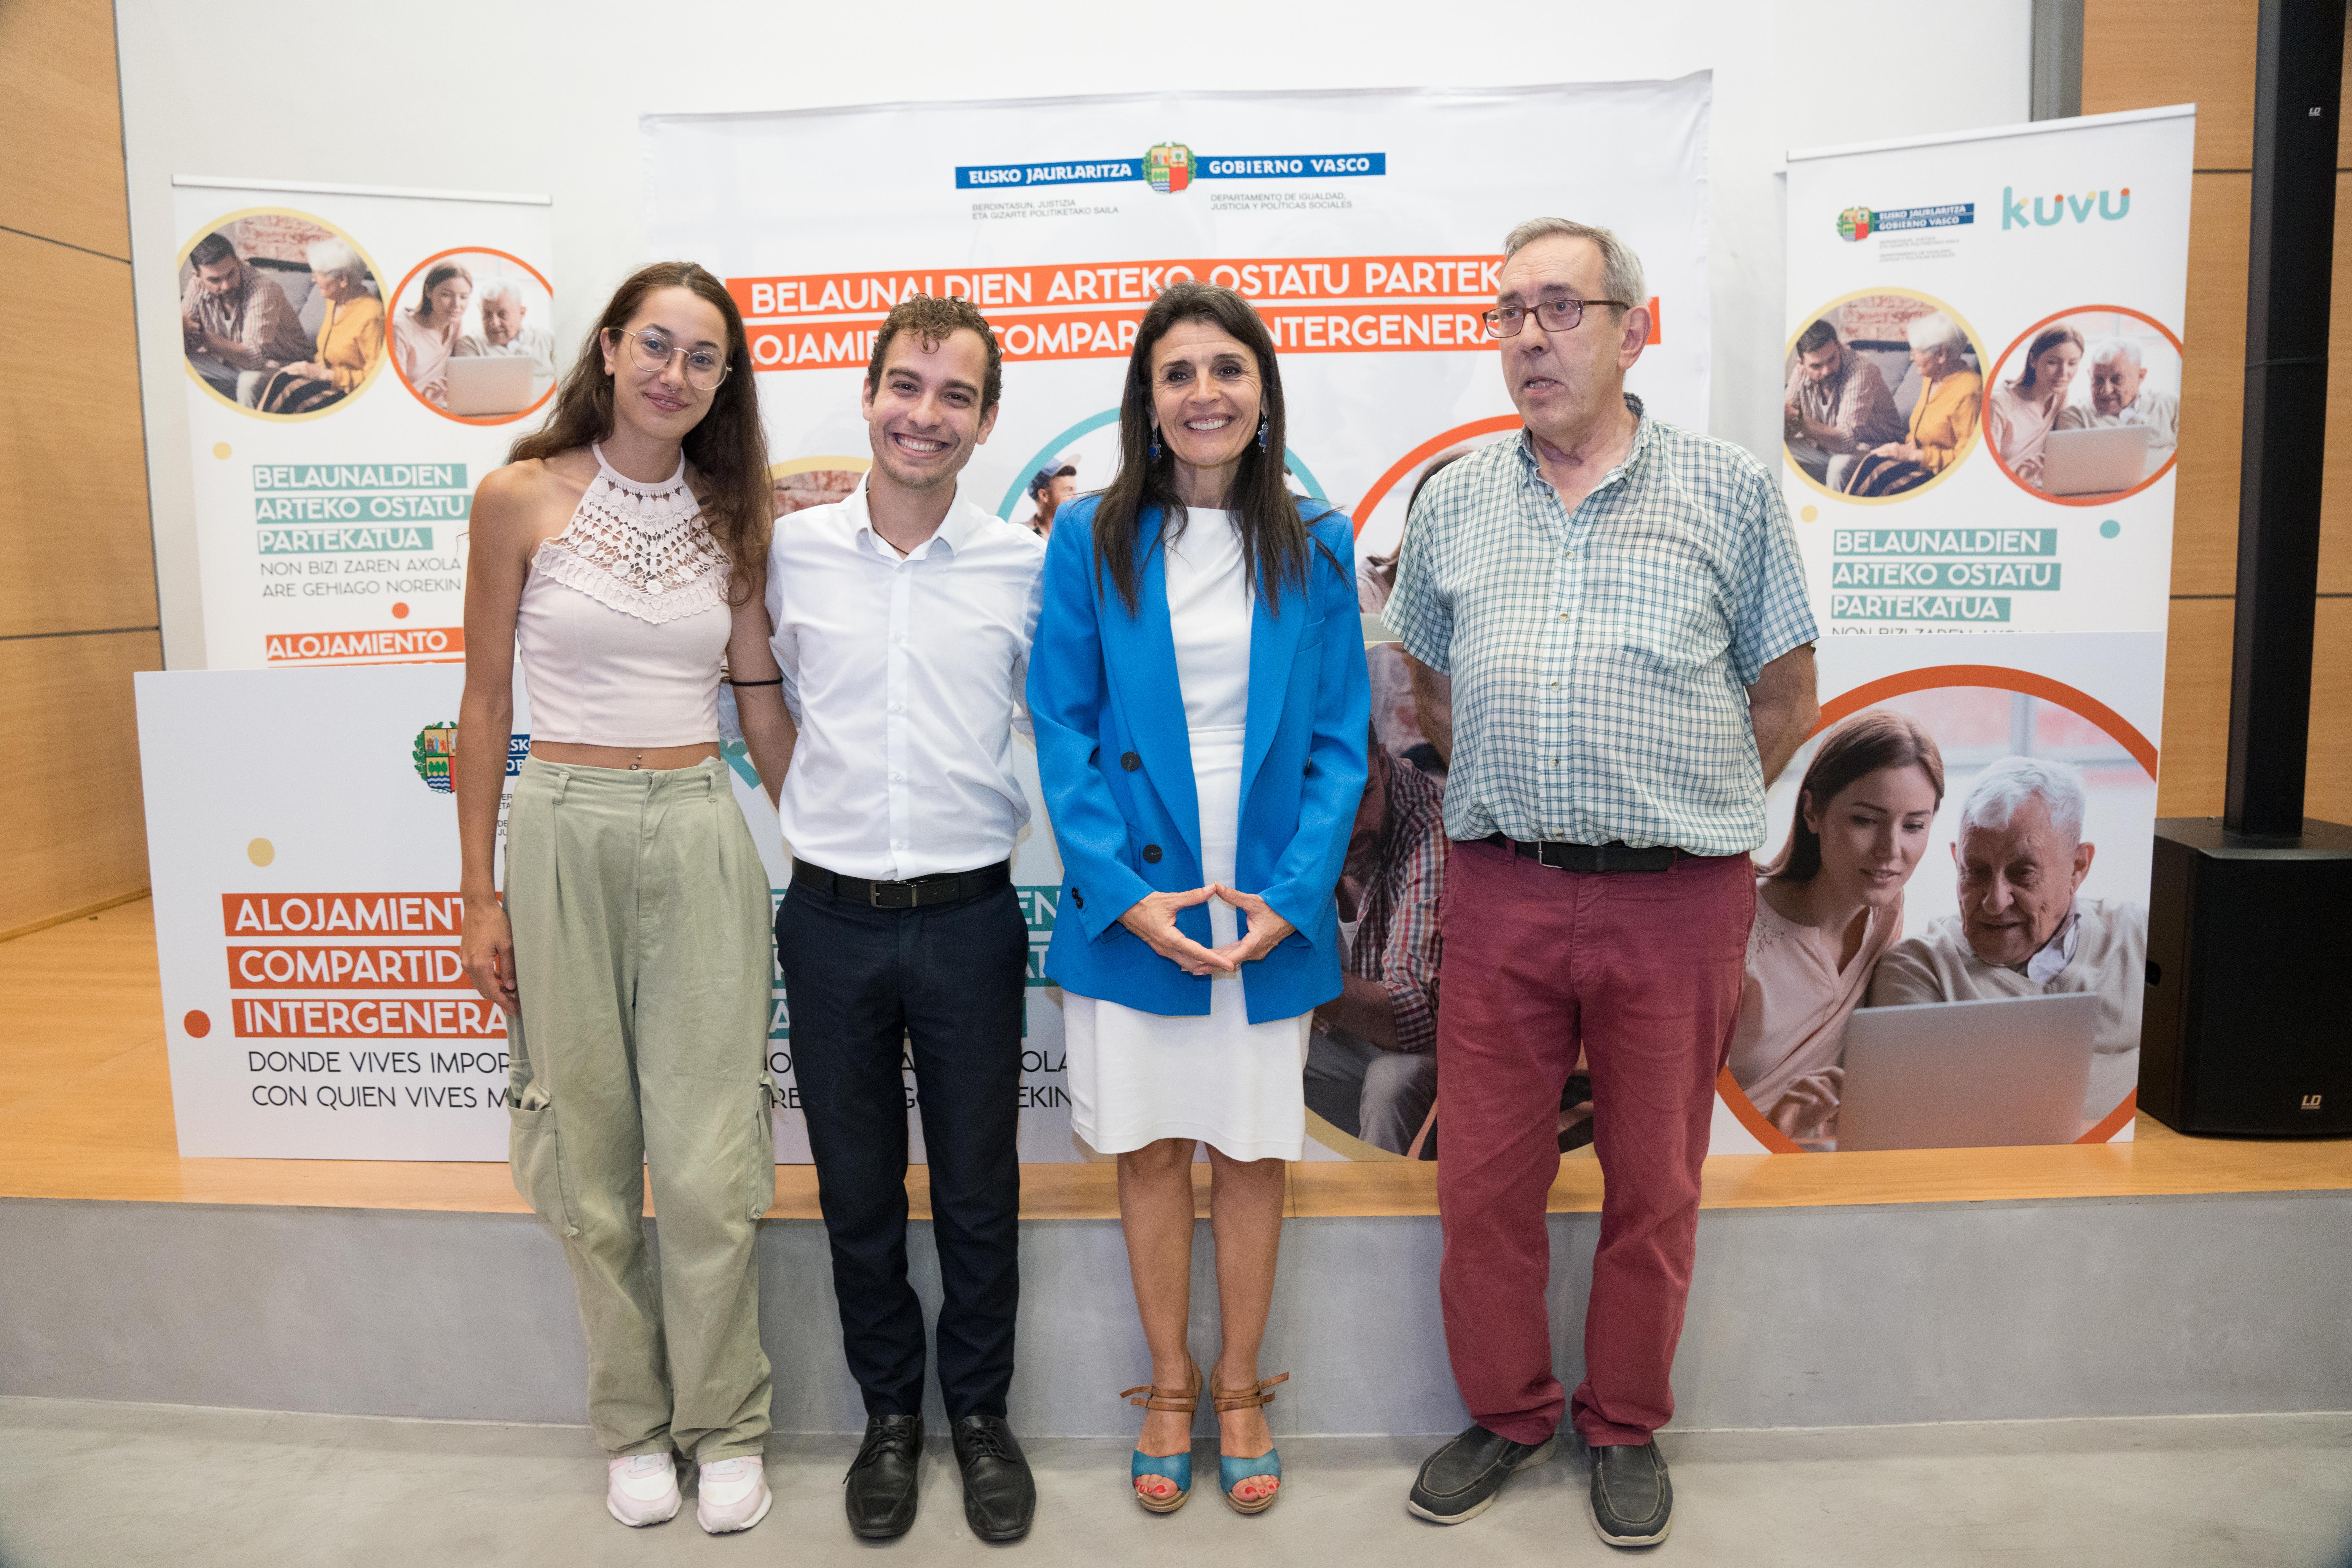 Euskadi pone en marcha un proyecto para que jóvenes y mayores convivan juntos